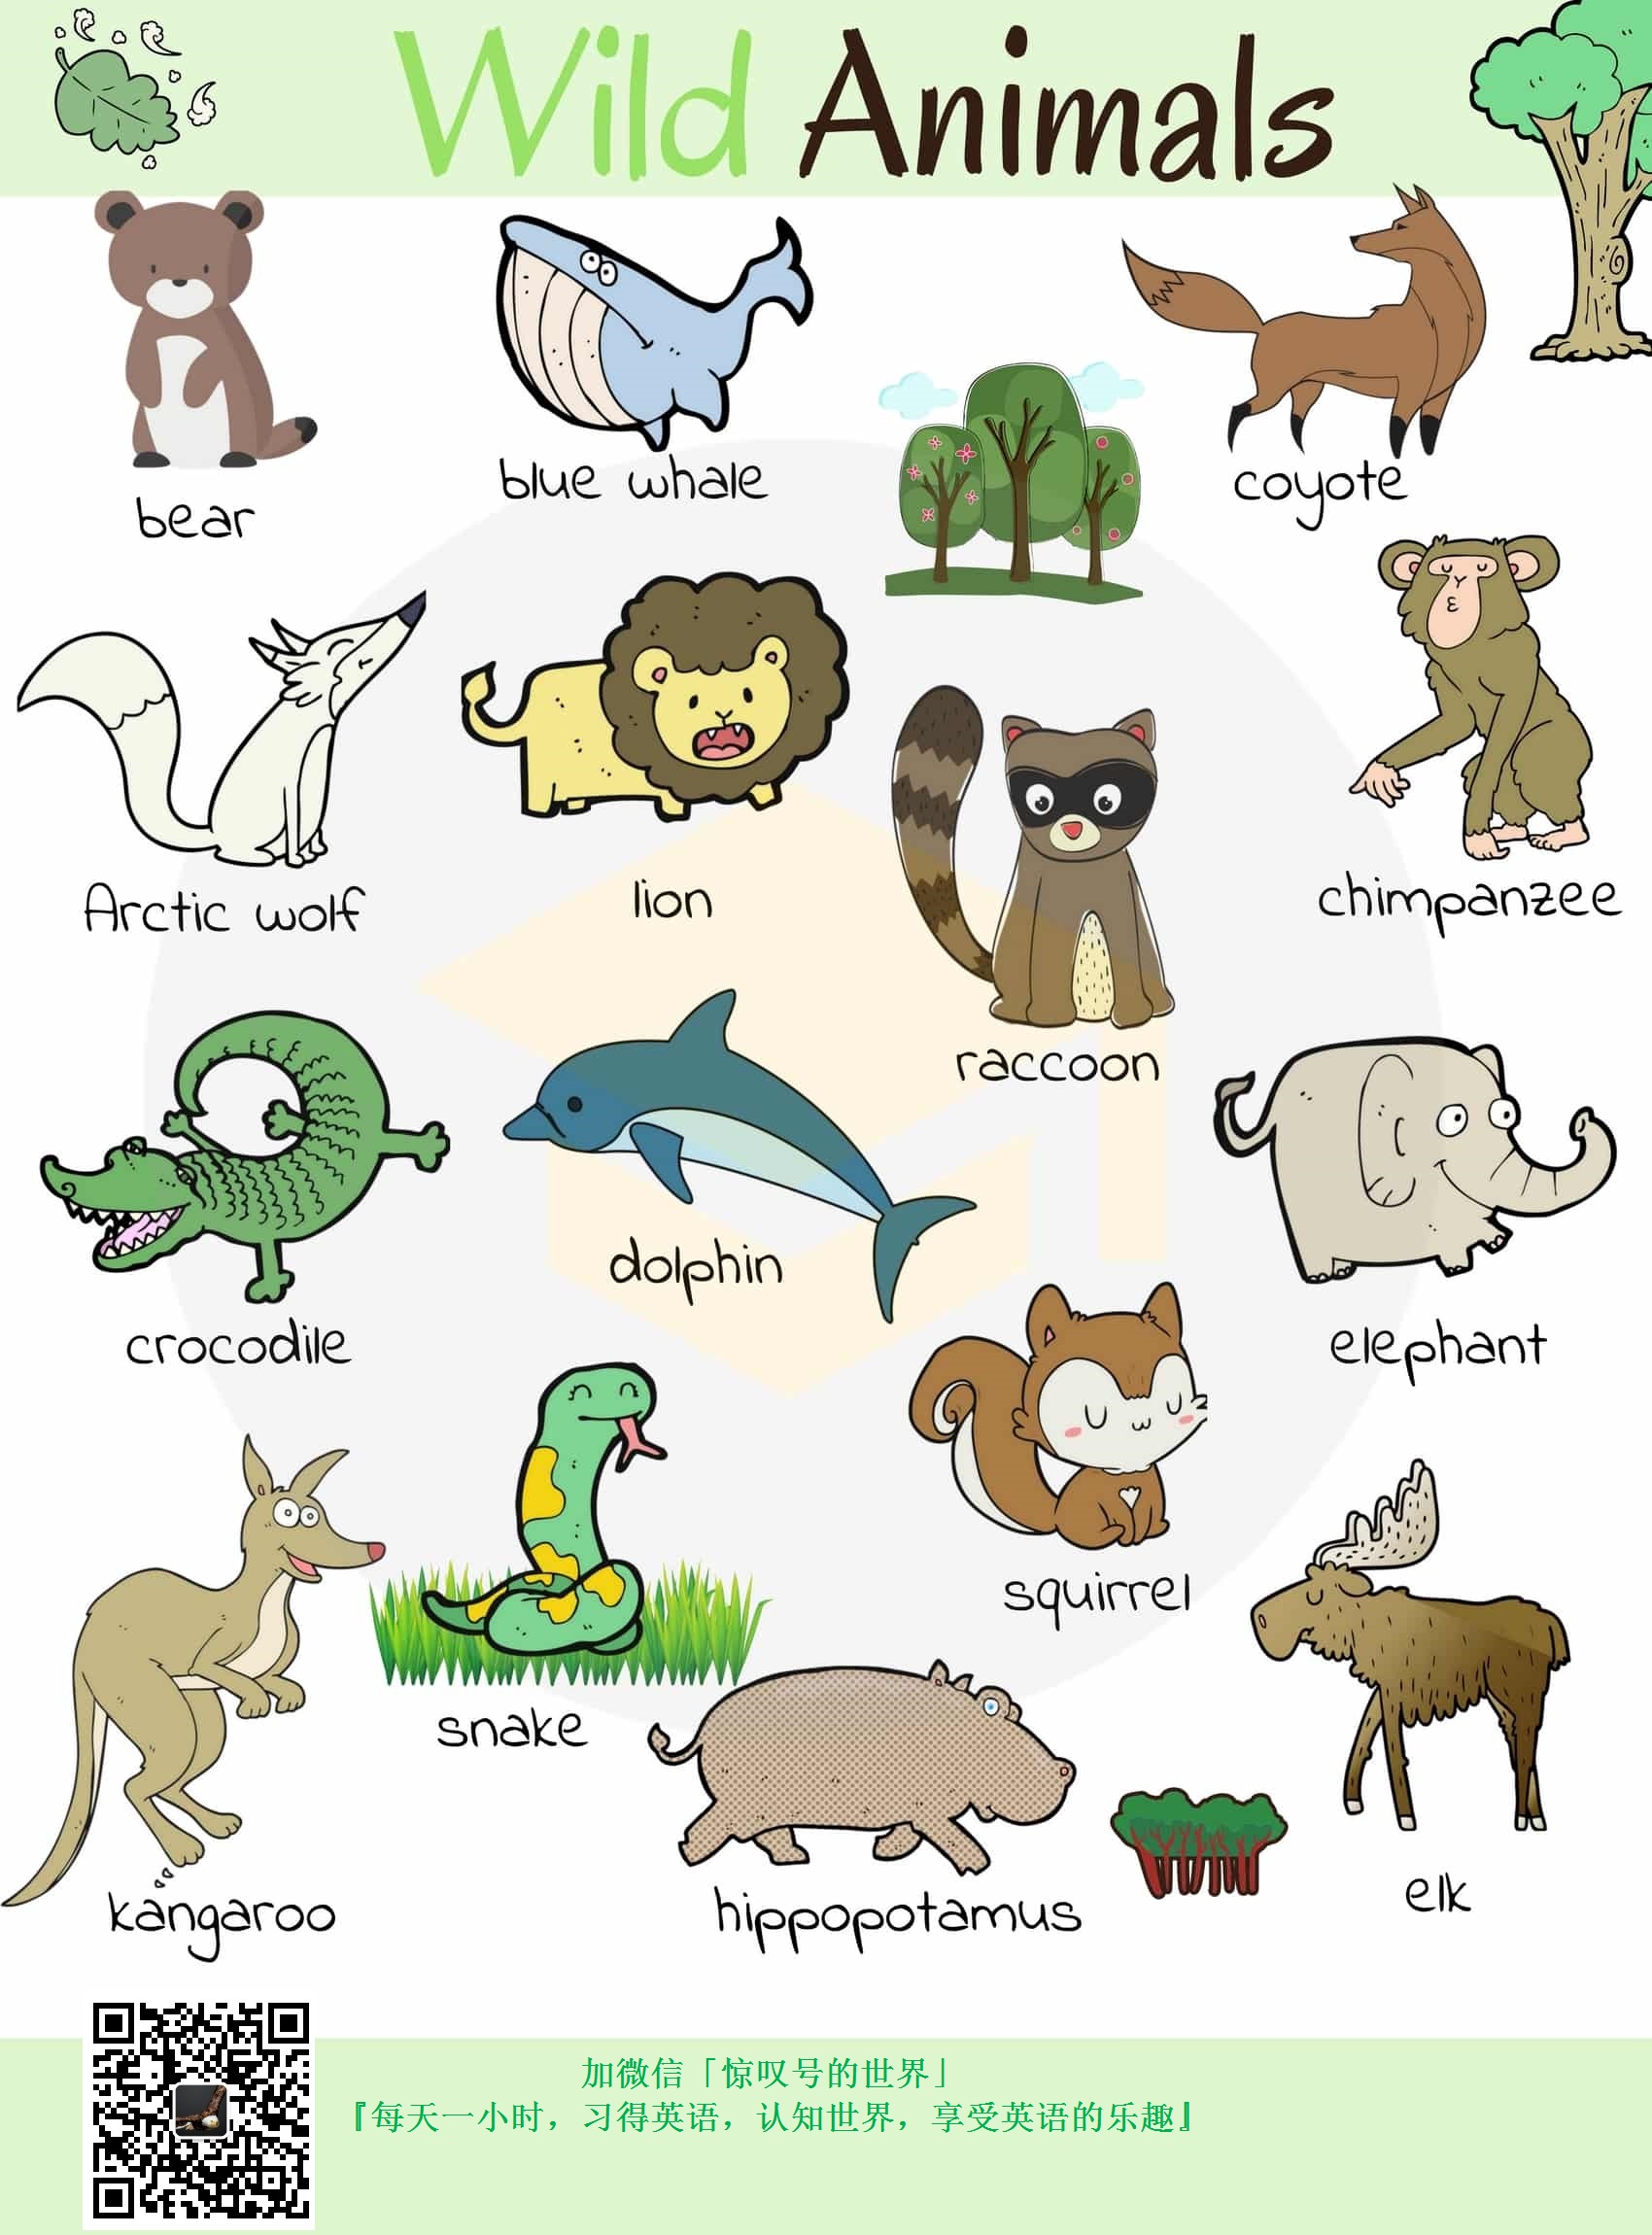 『英语/词汇』009期-野生动物词汇图(wild animals )